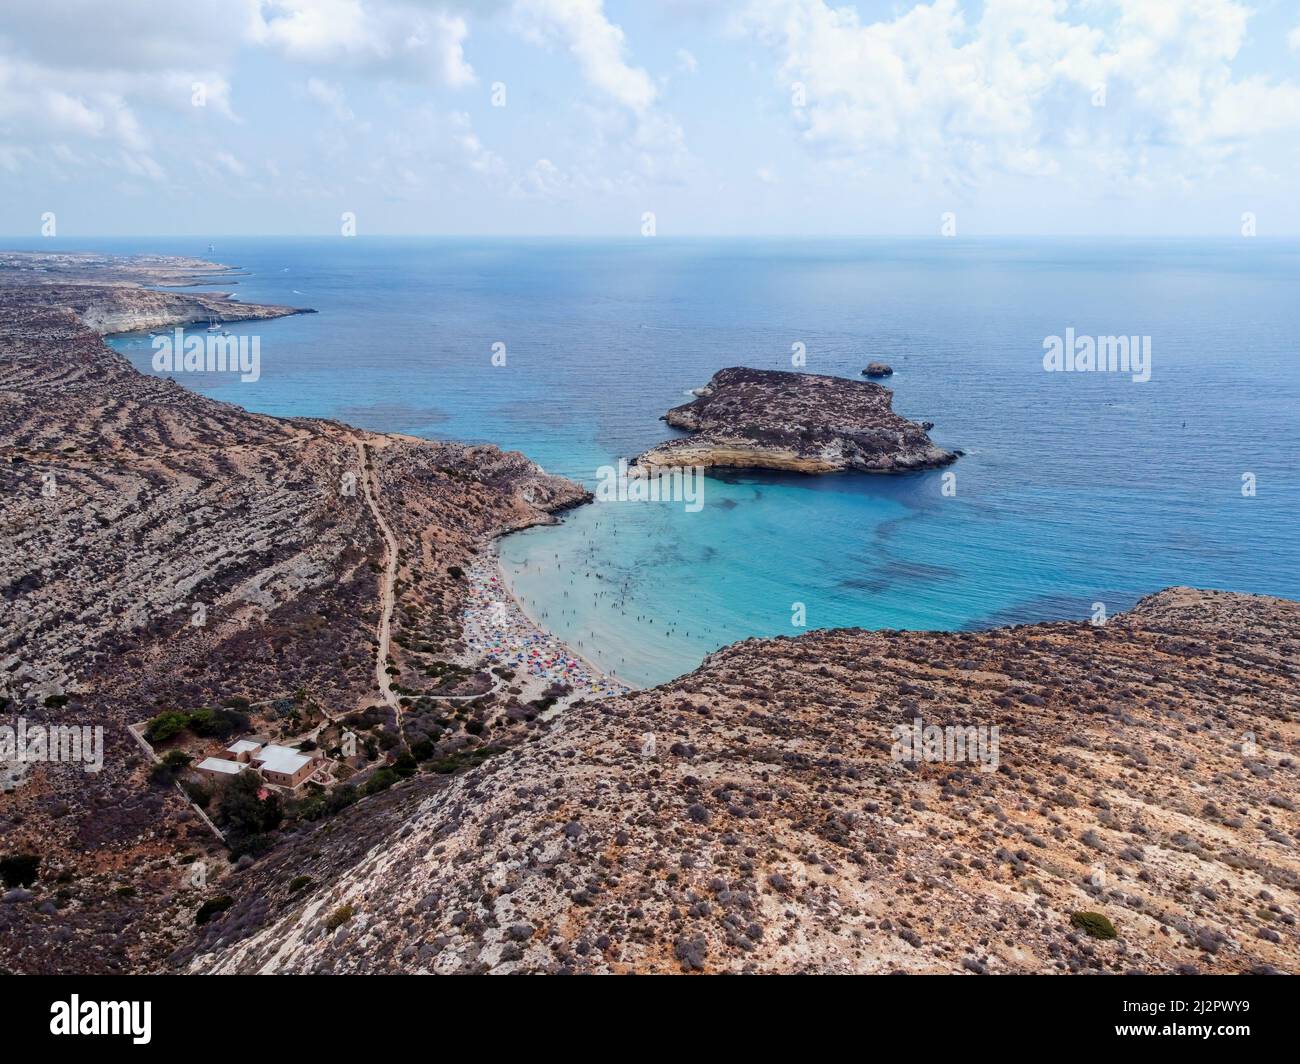 Drone aereo. Spiaggia e Isola dei Conigli, Lampedusa. Tranquilla spiaggia in stile baia con sabbia bianca e surf turchese delimitato da scogliere rocciose. Foto Stock